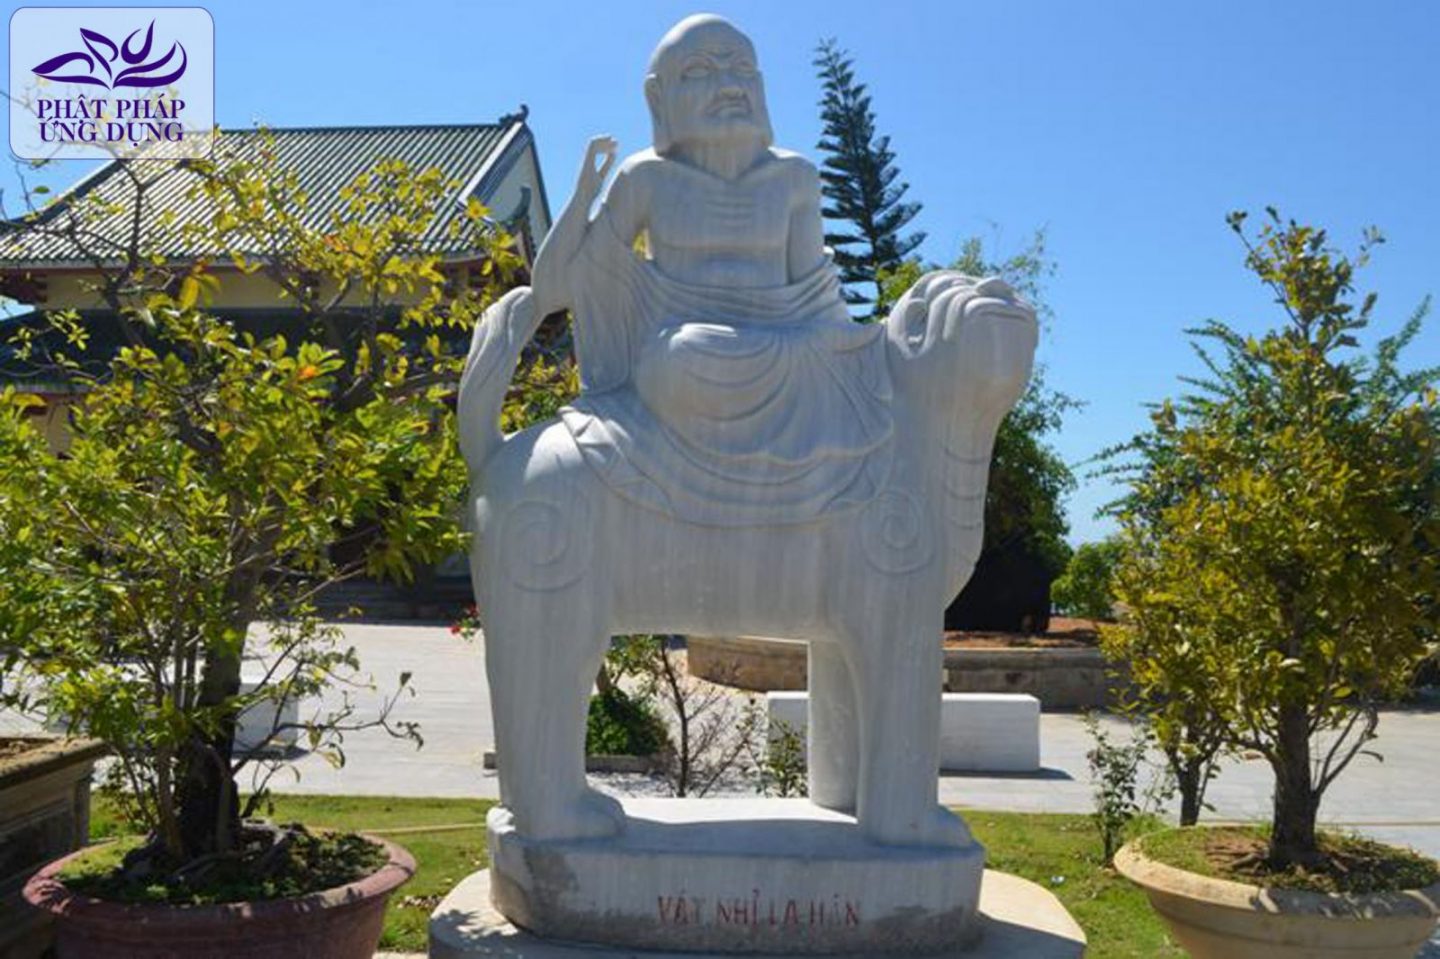 Chùa Linh Ứng: Chiêm ngưỡng Tượng Phật Bà và 18 vị La Hán lớn nhất Việt Nam